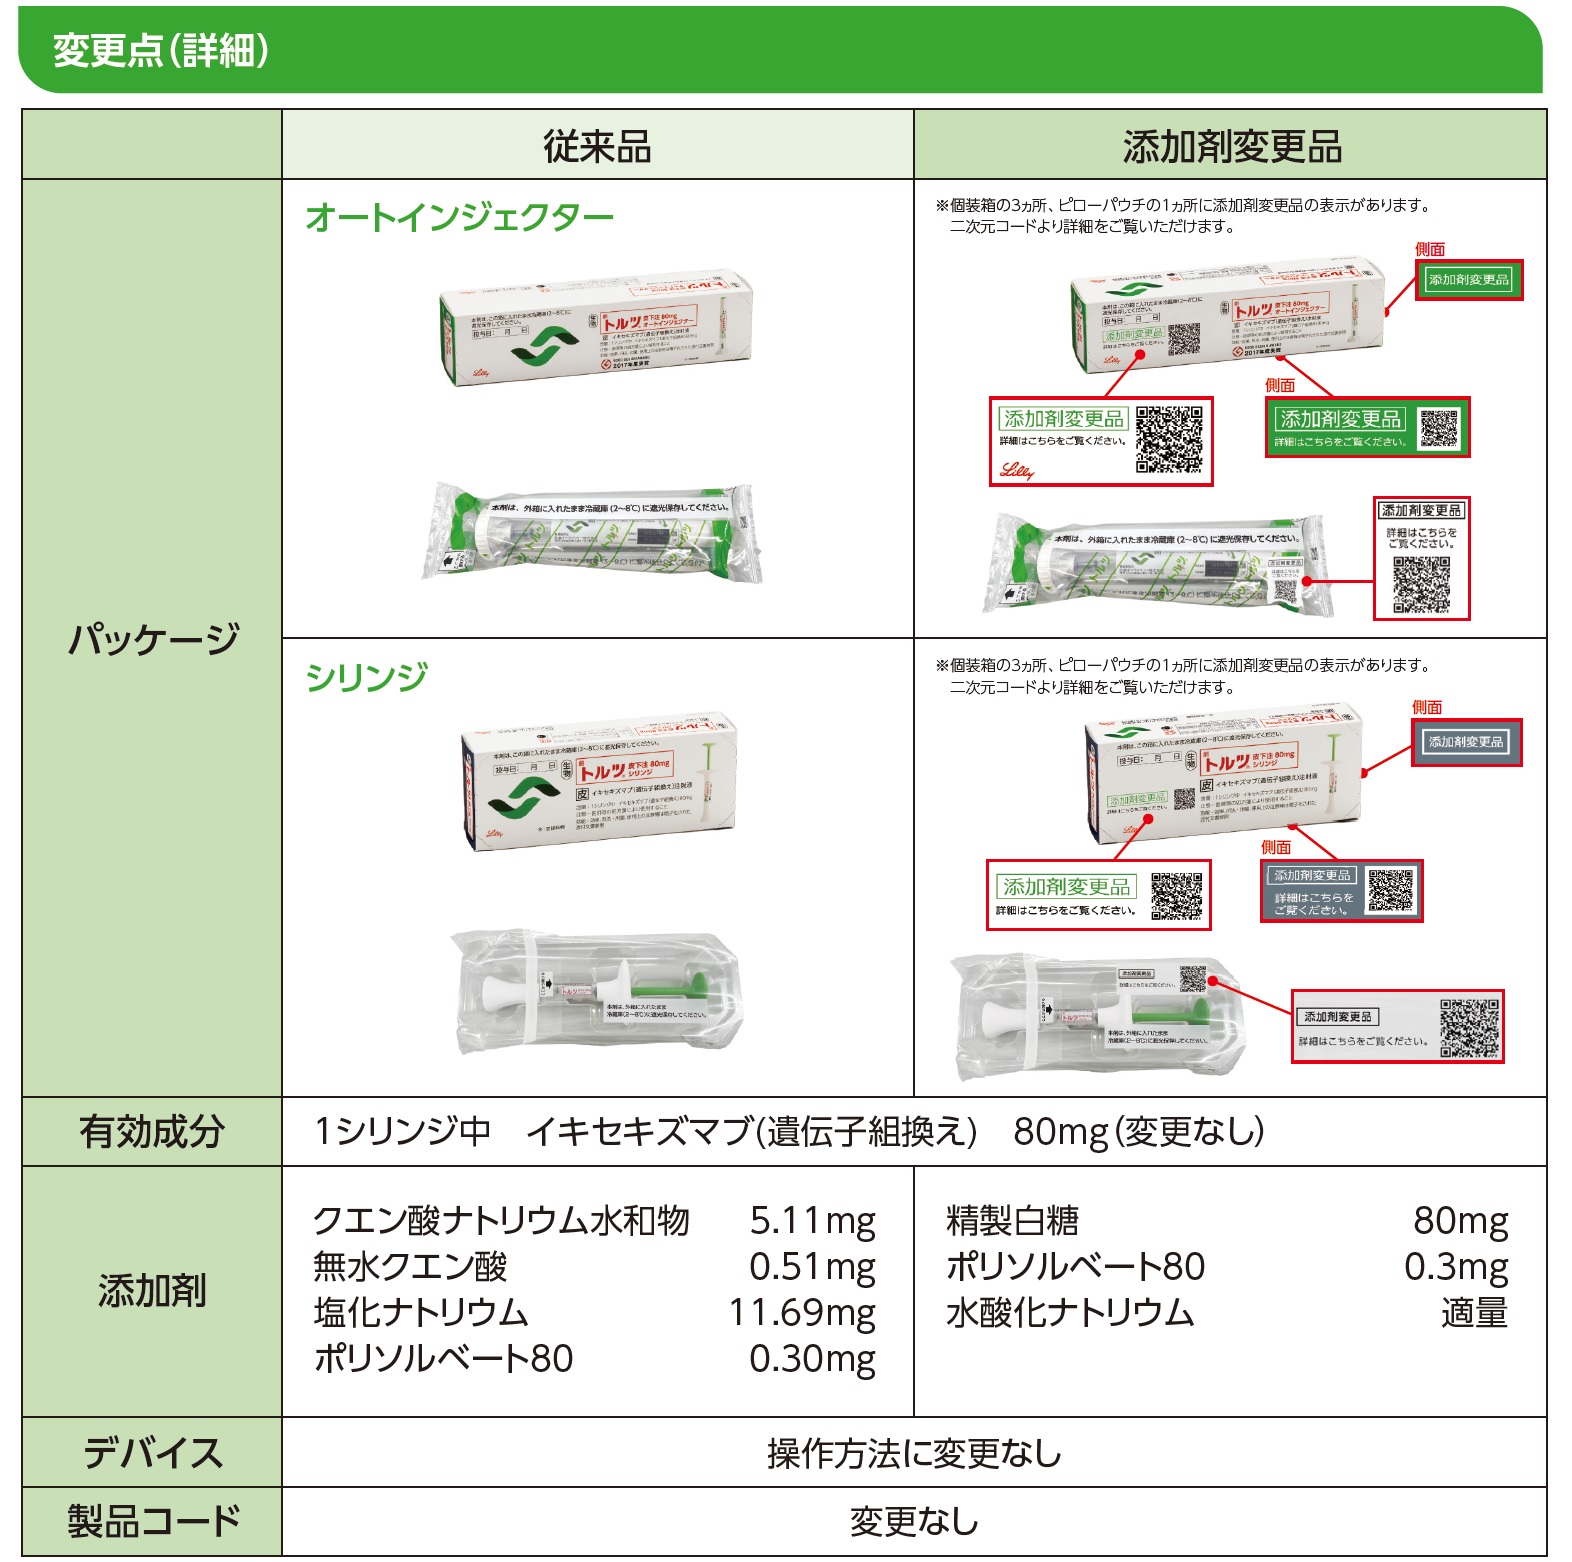 トルツ添加剤変更品のお知らせ | くすりの情報 | 日本イーライリリー